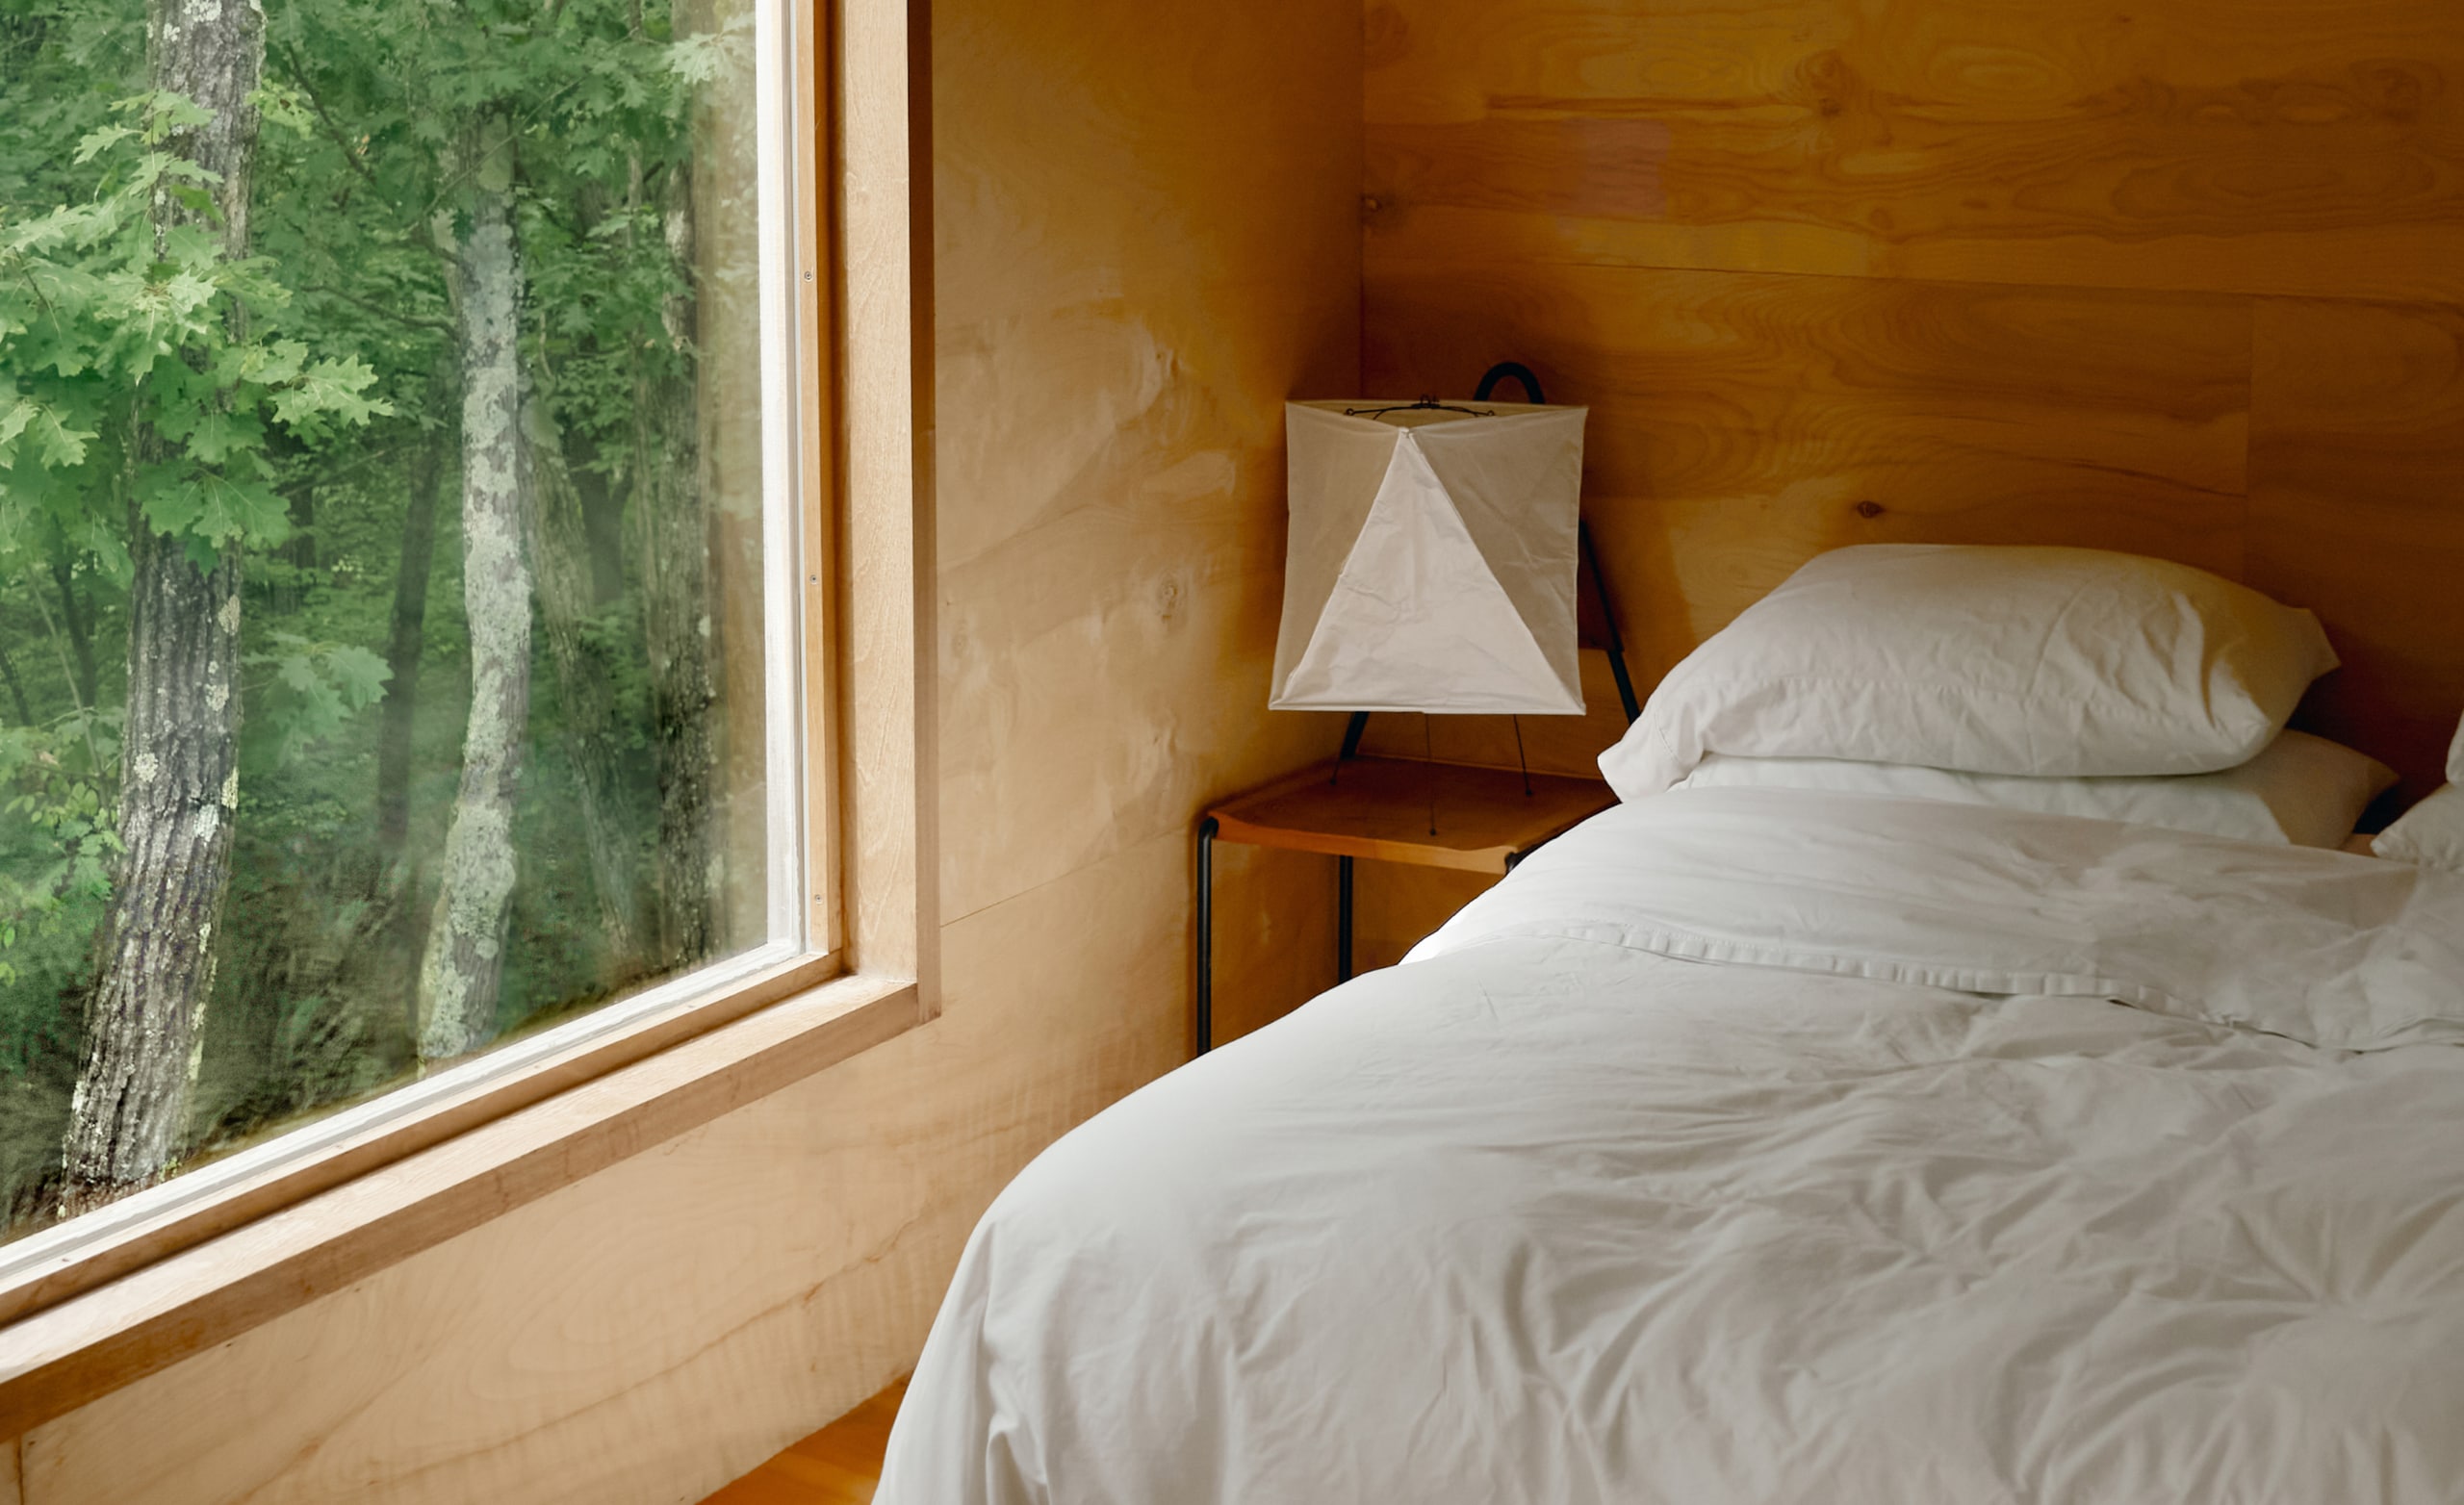 Et soverom med hvite laken på en nyoppredd seng, og et stort vindu med trær utenfor.